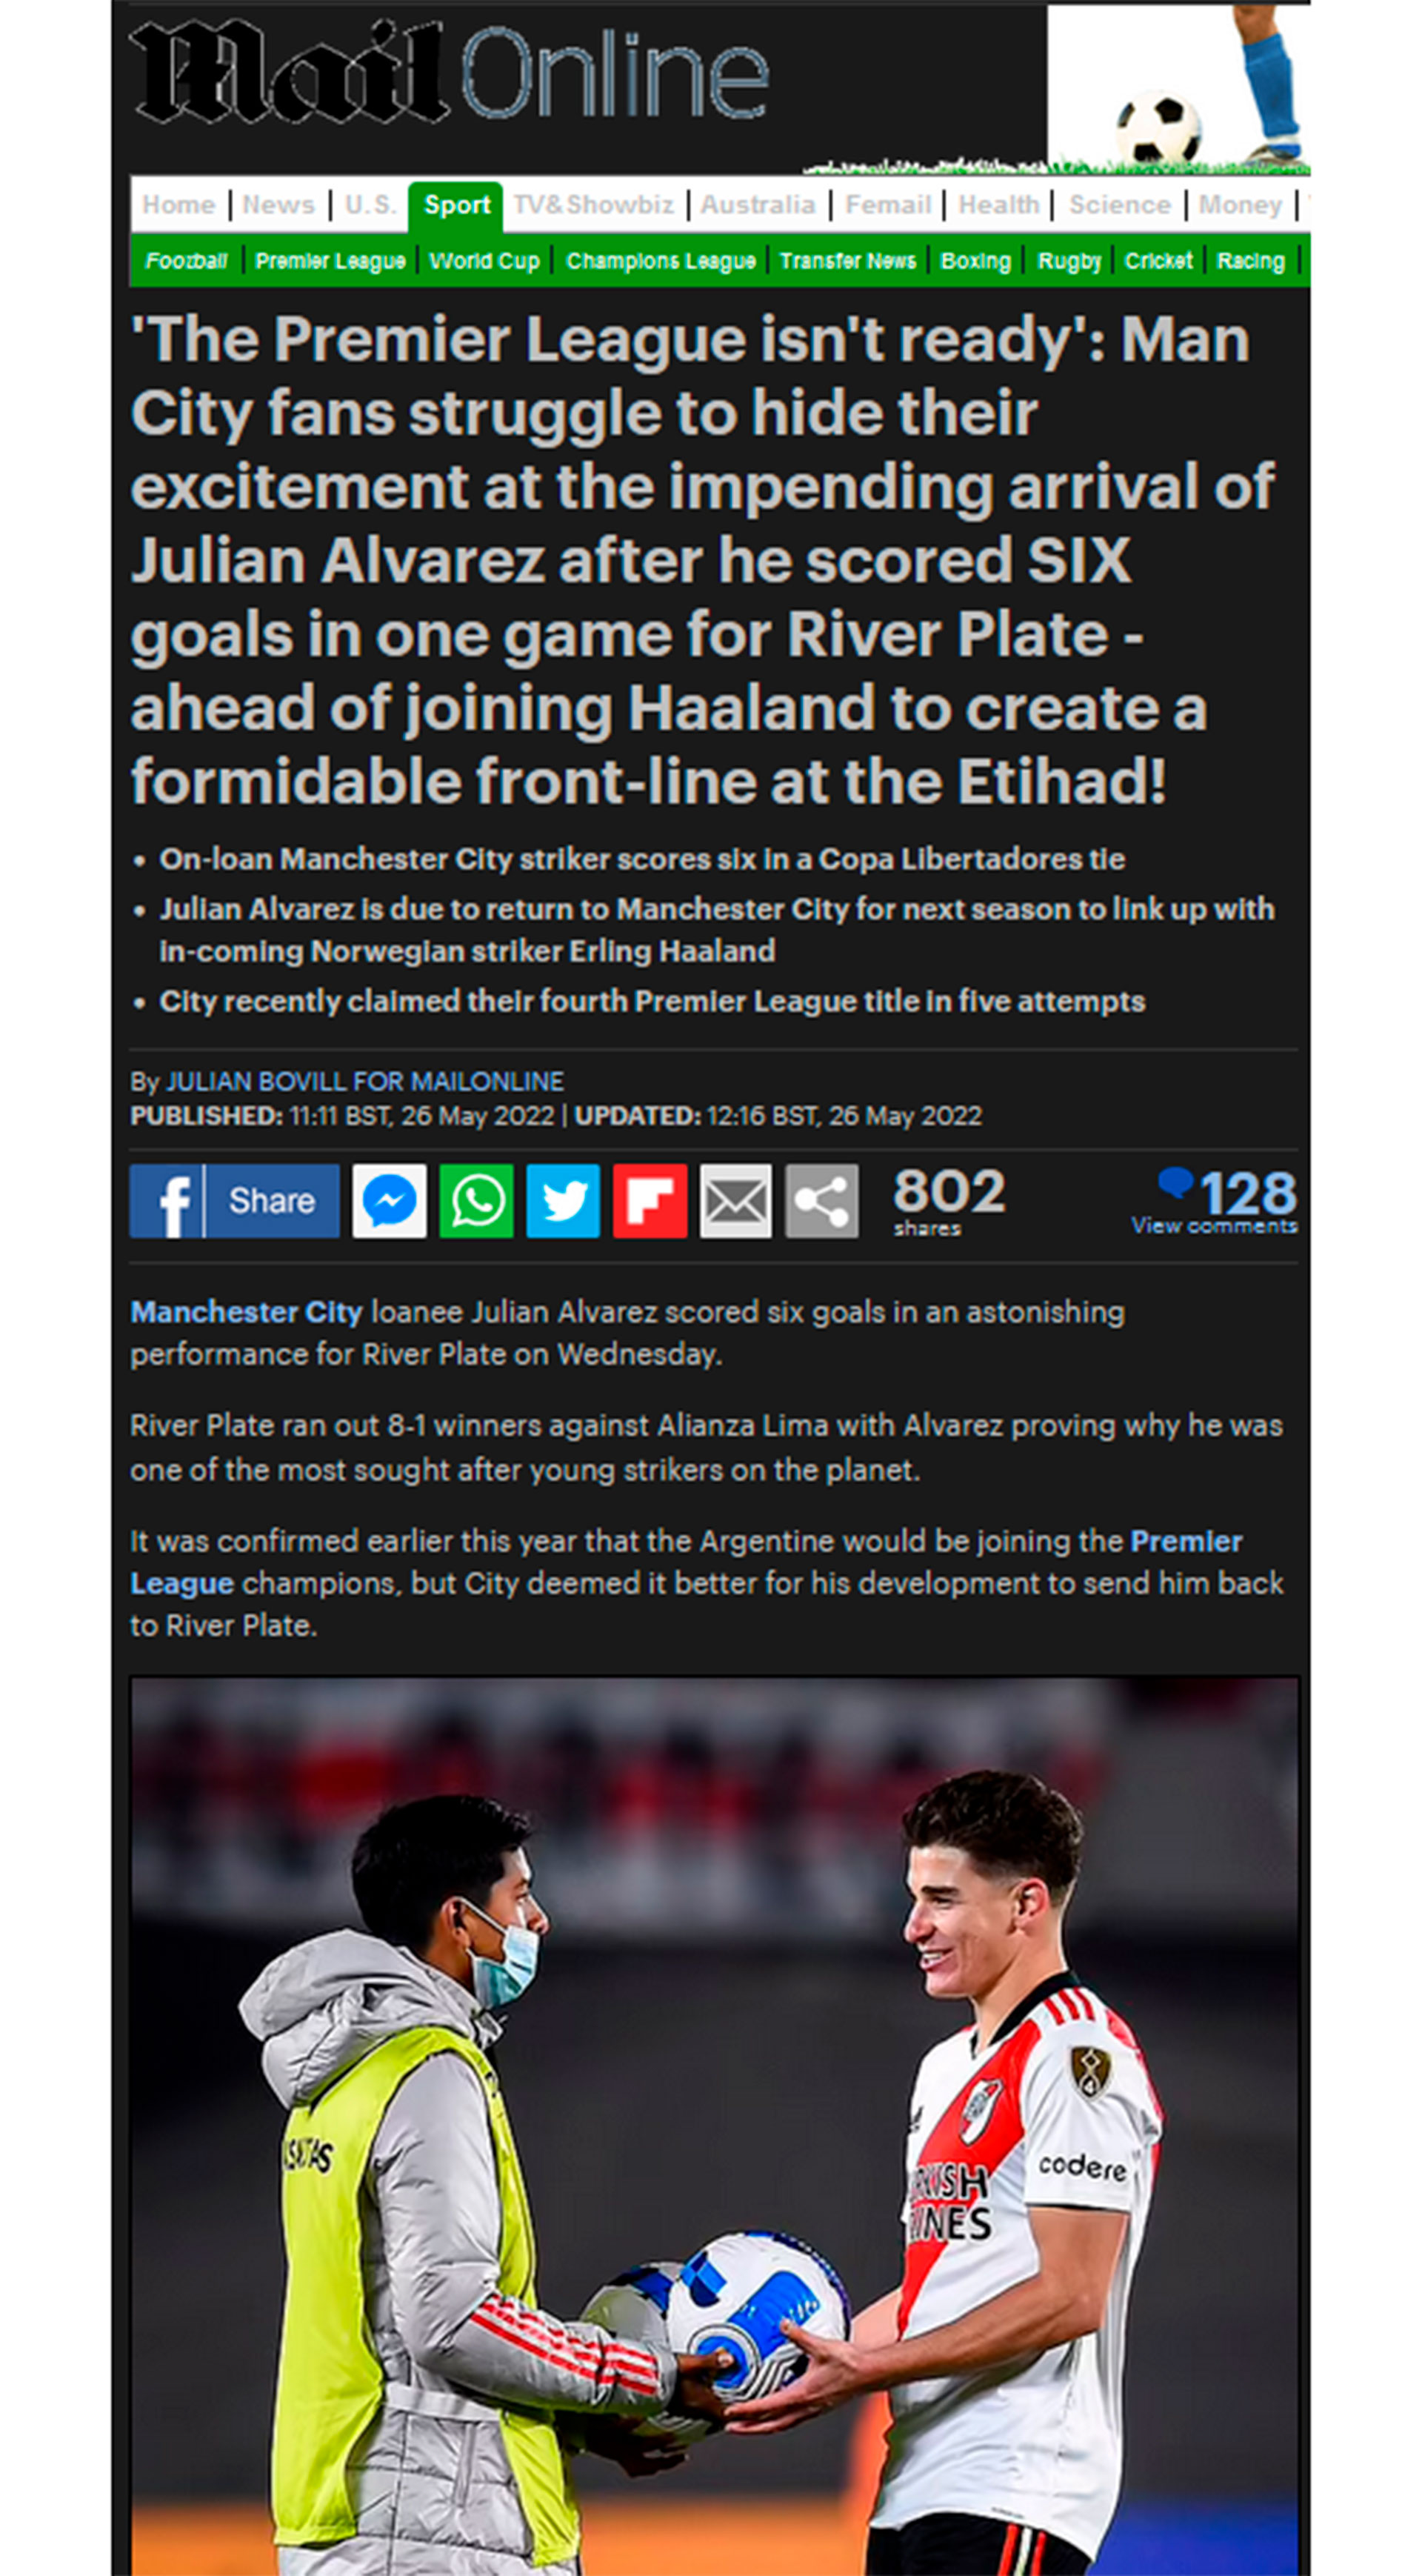 Daily Mail encabezó con "La Premier League no está lista" para el talento de Julián Álvarez